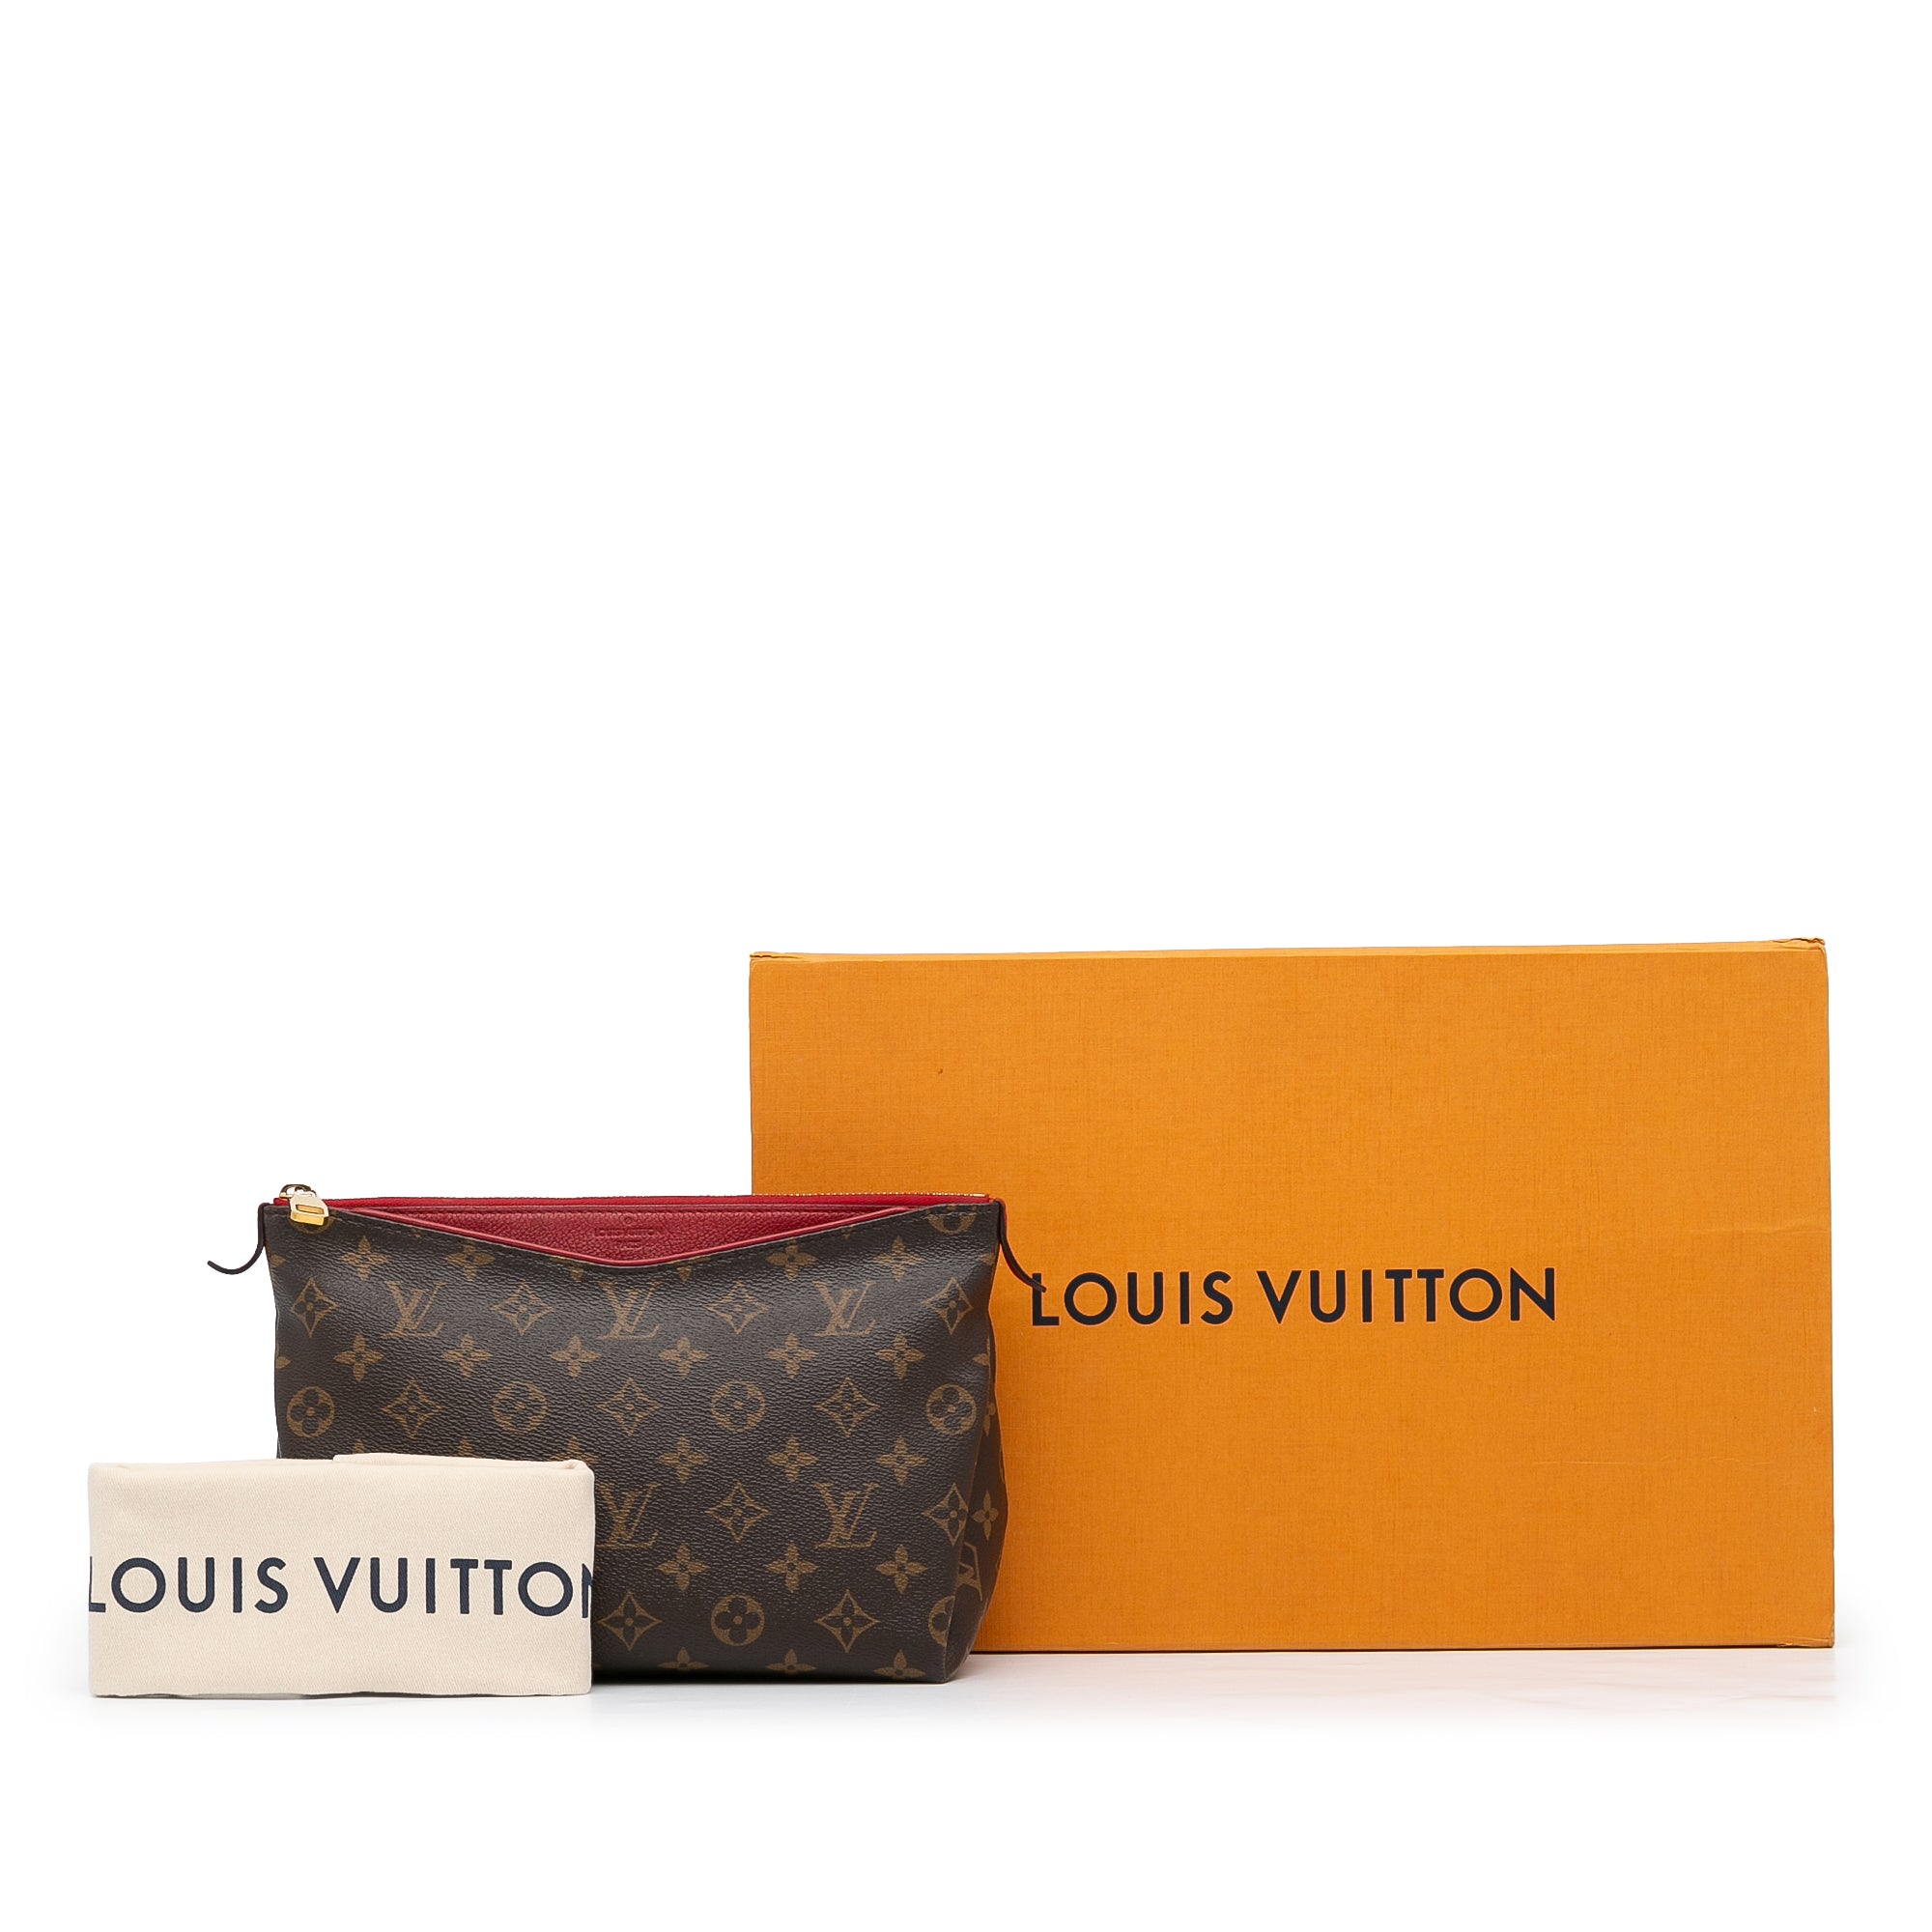 Louis Vuitton, Bags, Authentic Louis Vuitton Pallas Beauty Case Cherry